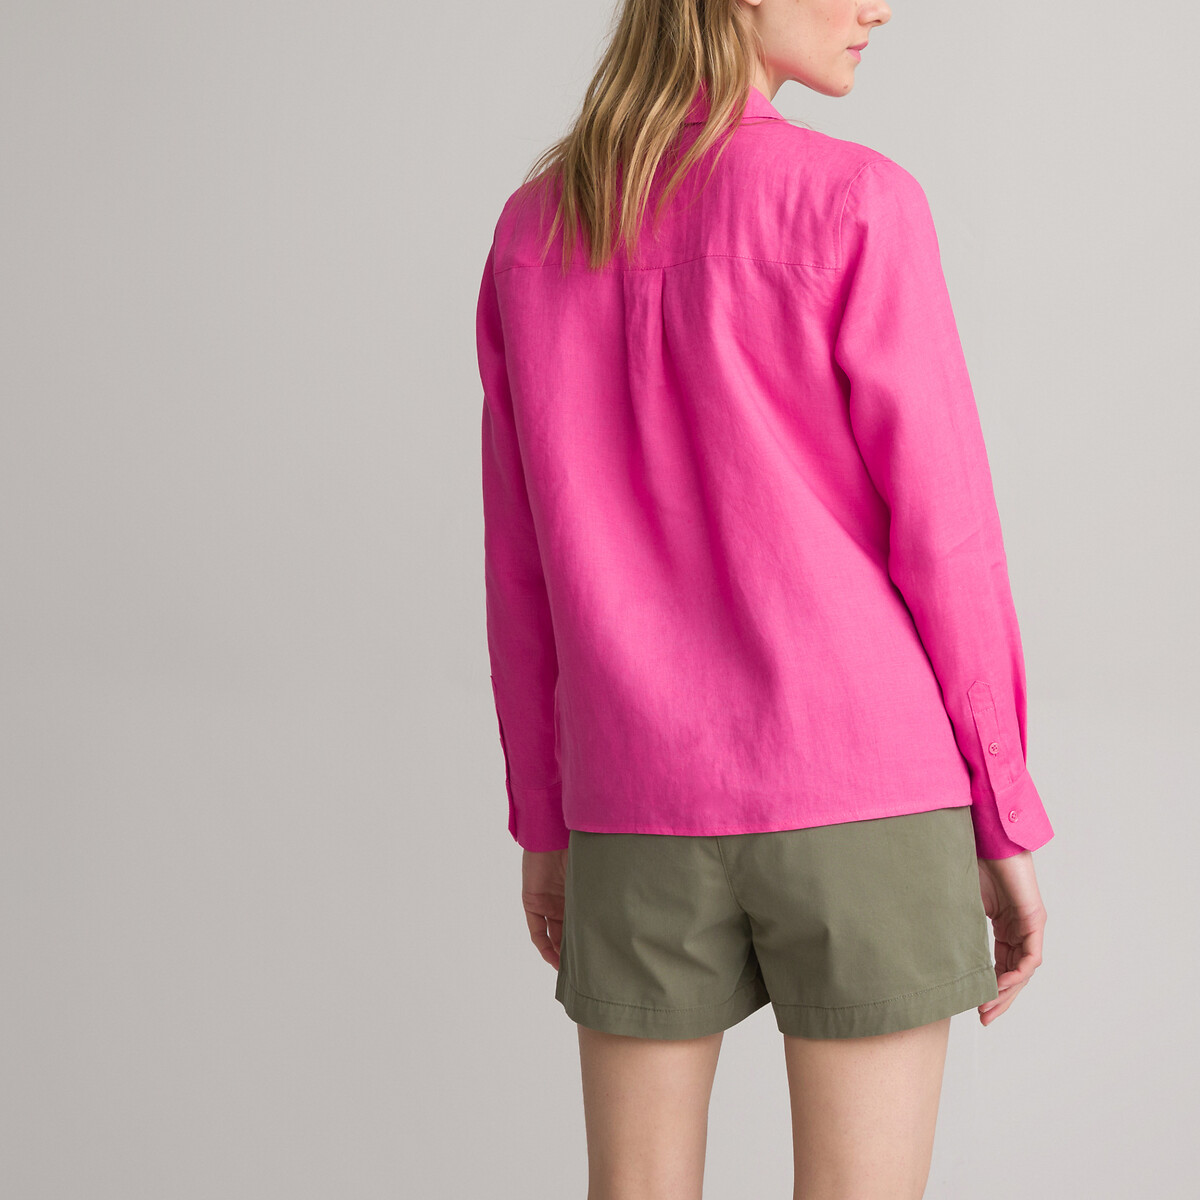 Рубашка Из льна с длинными рукавами 38 (FR) - 44 (RUS) розовый LaRedoute, размер 38 (FR) - 44 (RUS) Рубашка Из льна с длинными рукавами 38 (FR) - 44 (RUS) розовый - фото 4